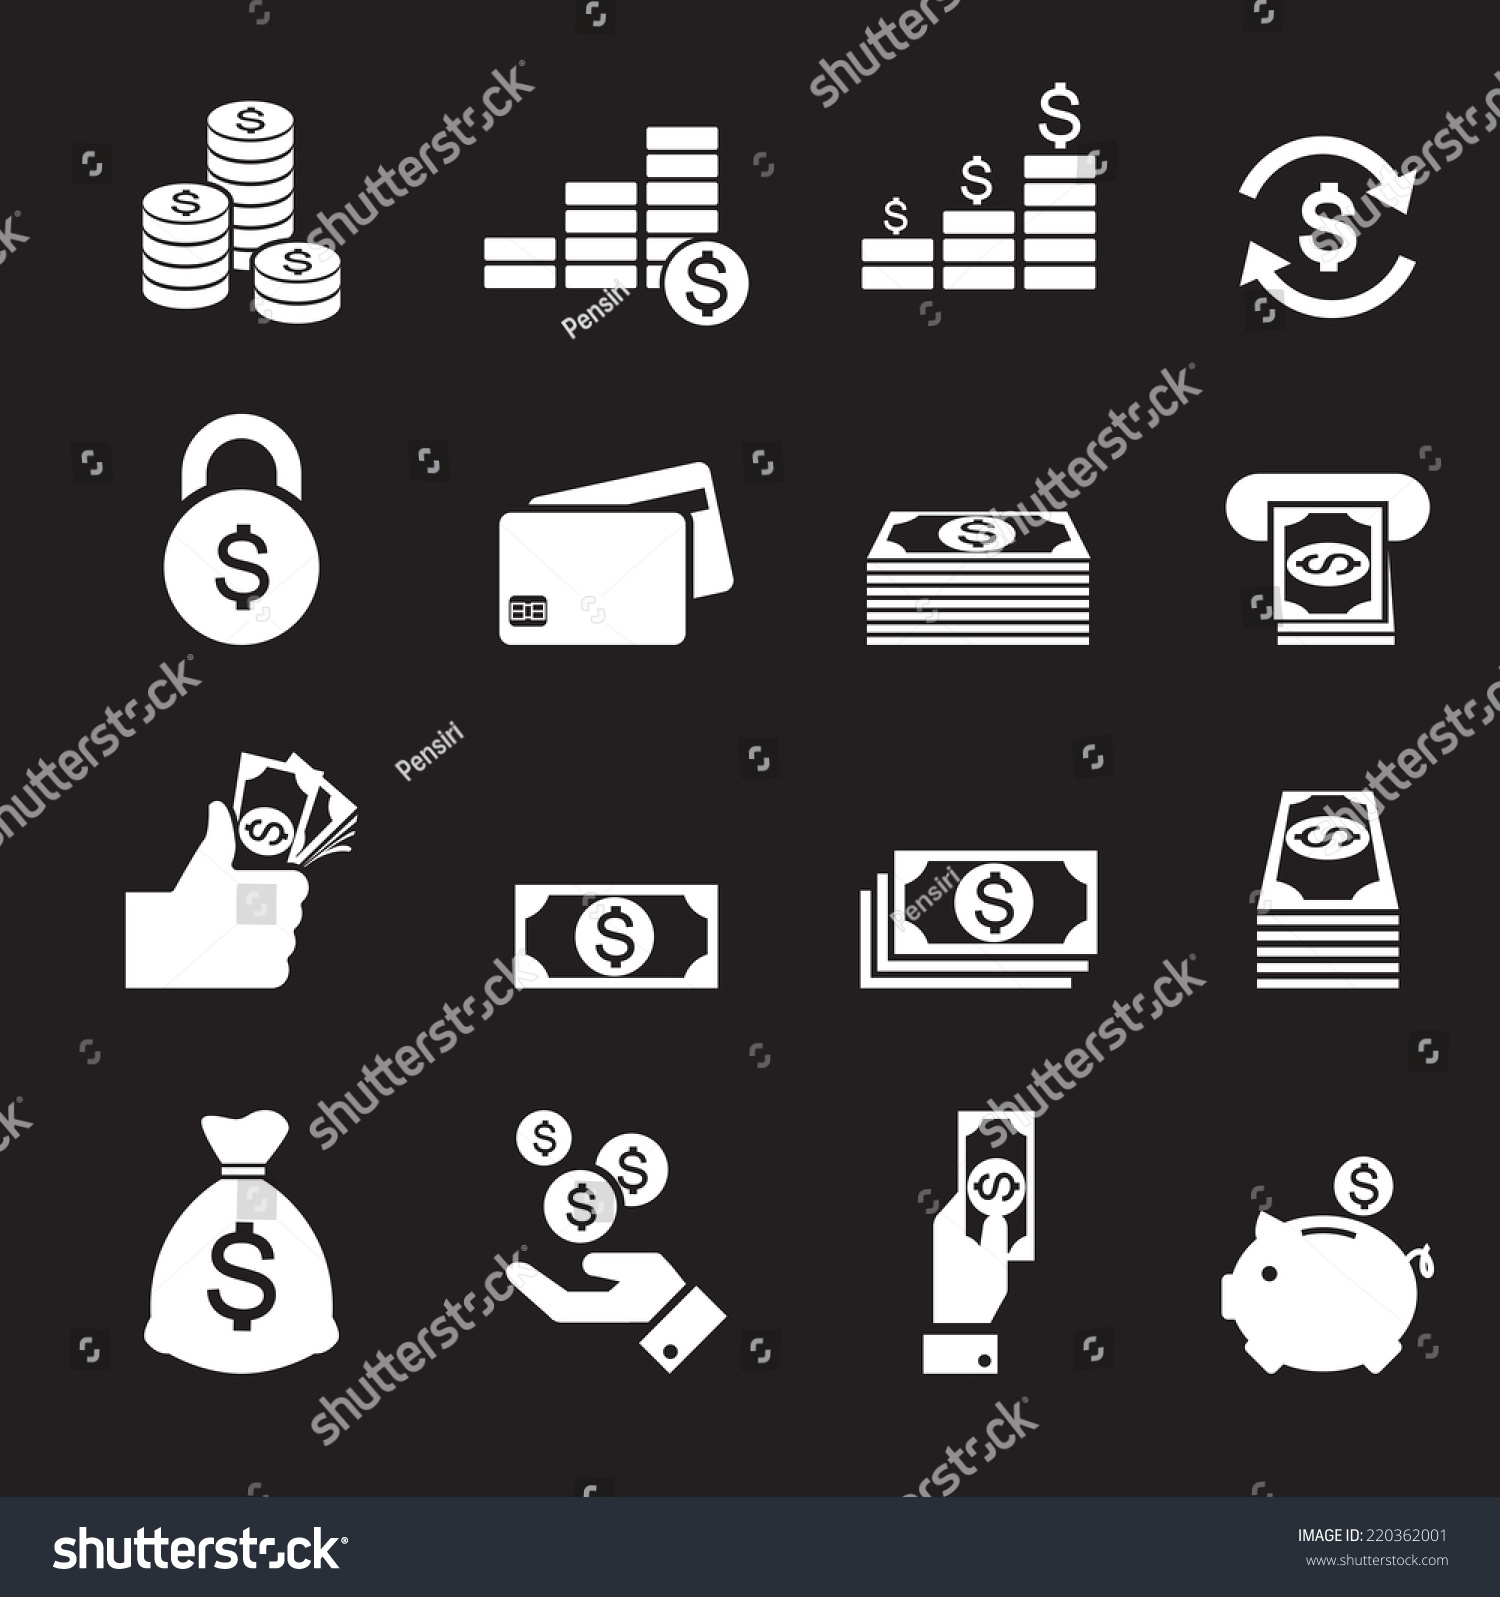 money icon #220362001